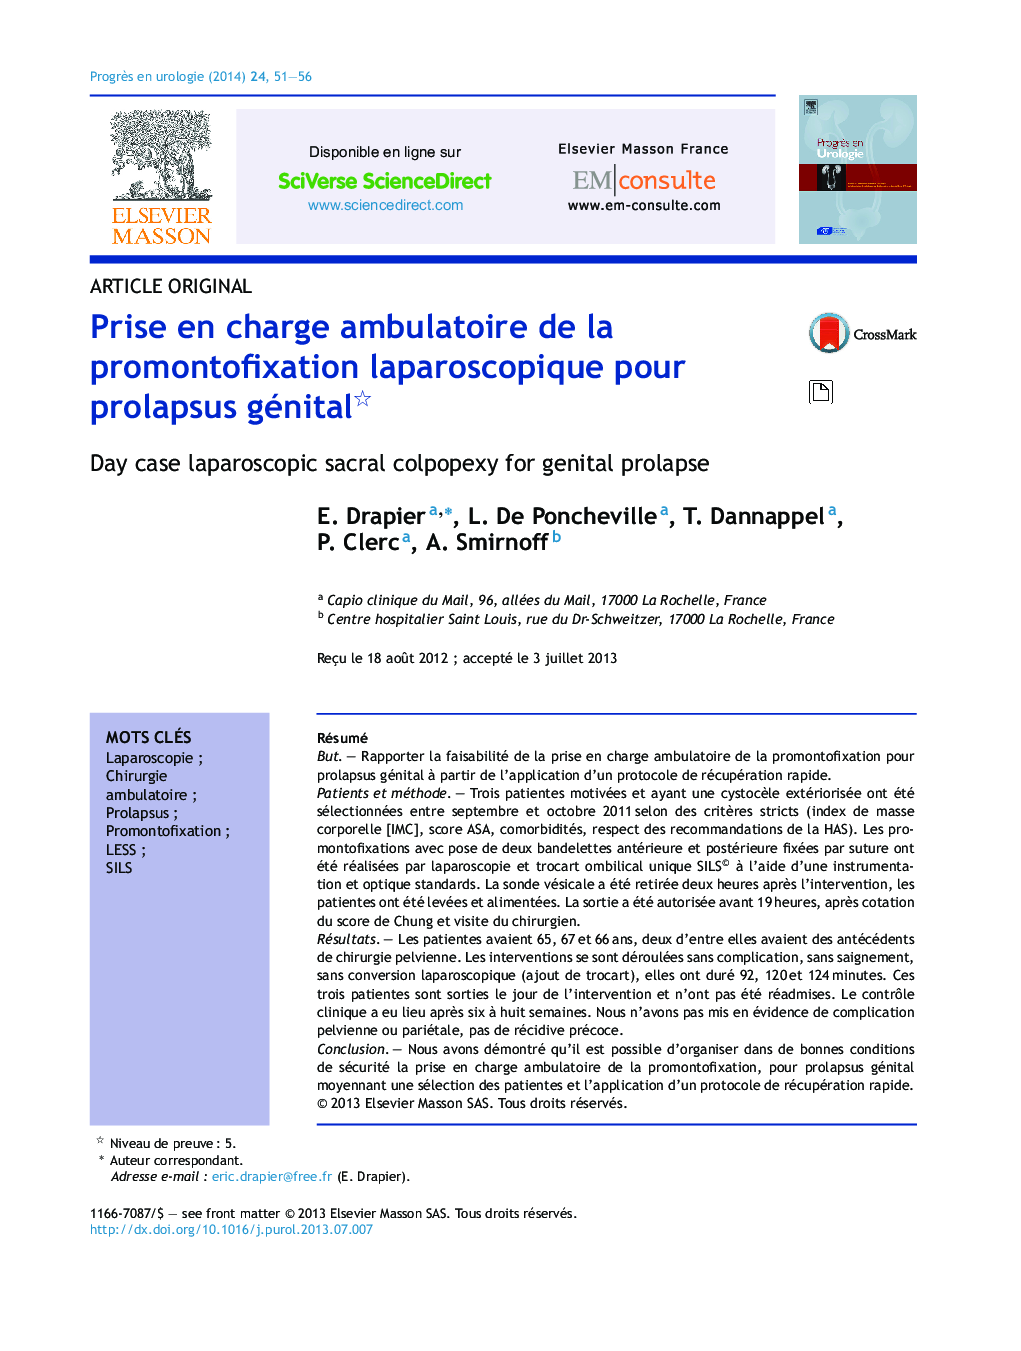 Prise en charge ambulatoire de la promontofixation laparoscopique pour prolapsus génital 